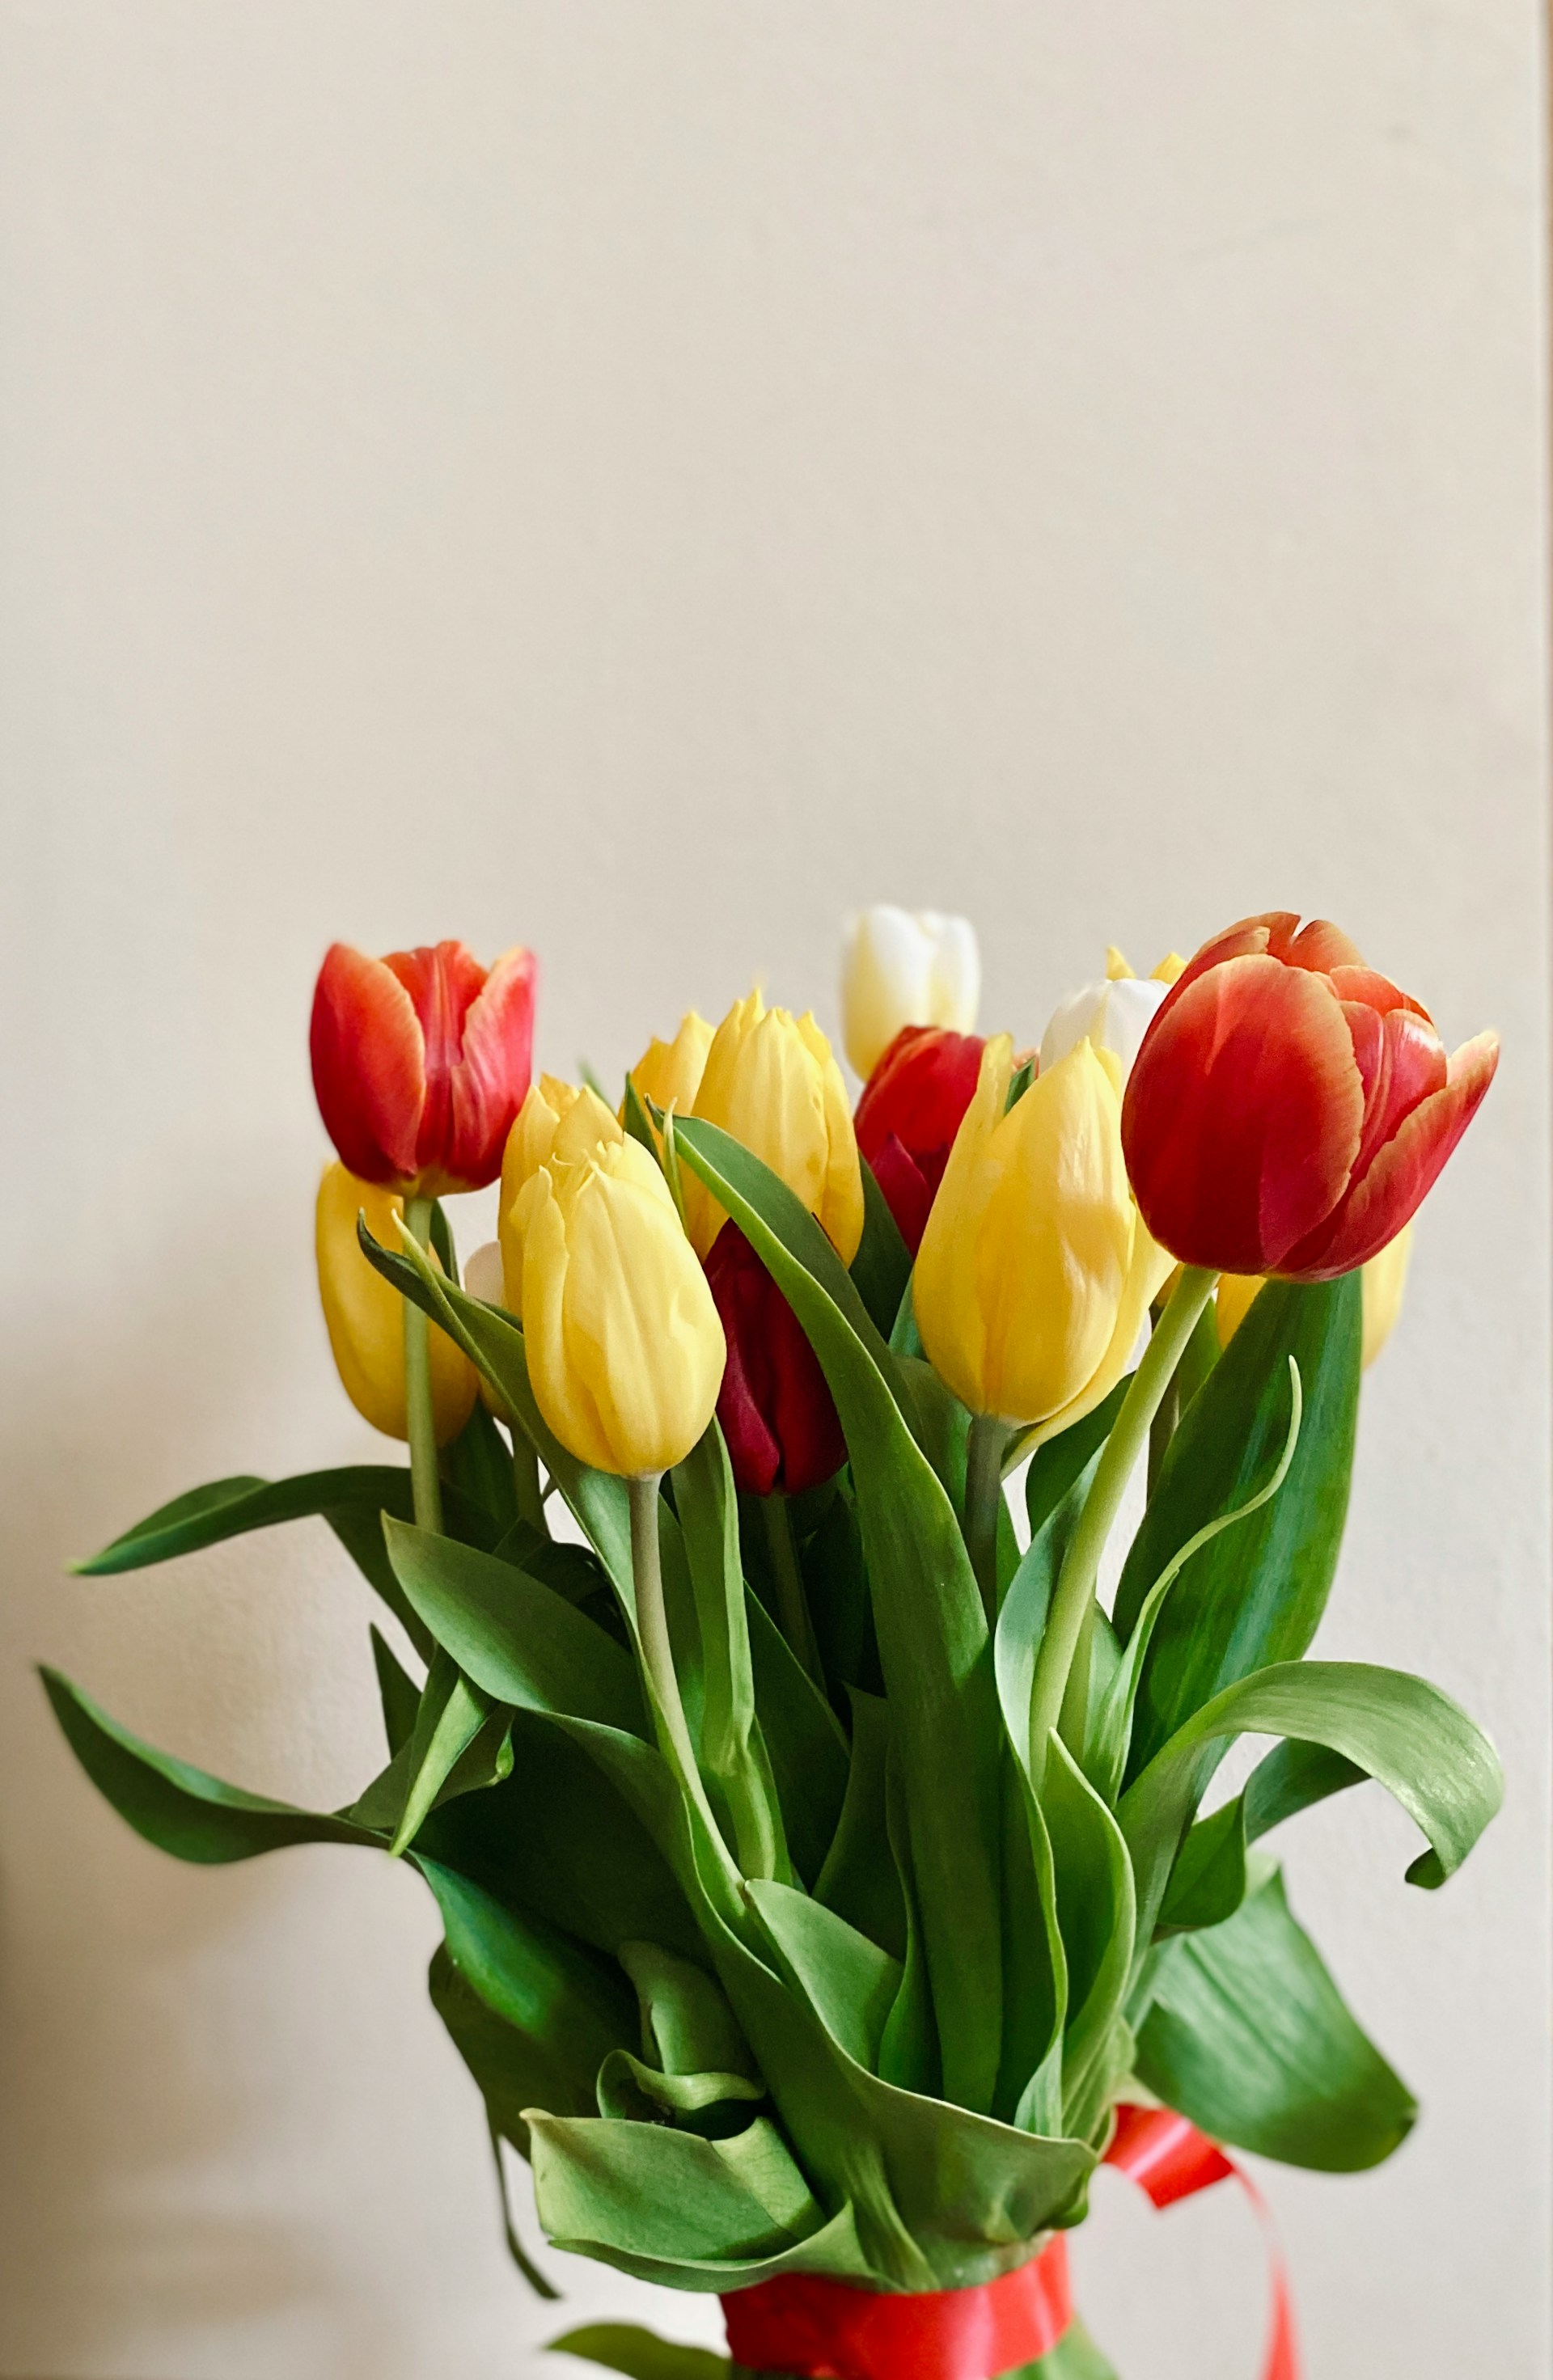 Un ramo de tulipanes | Fuente: Unsplash